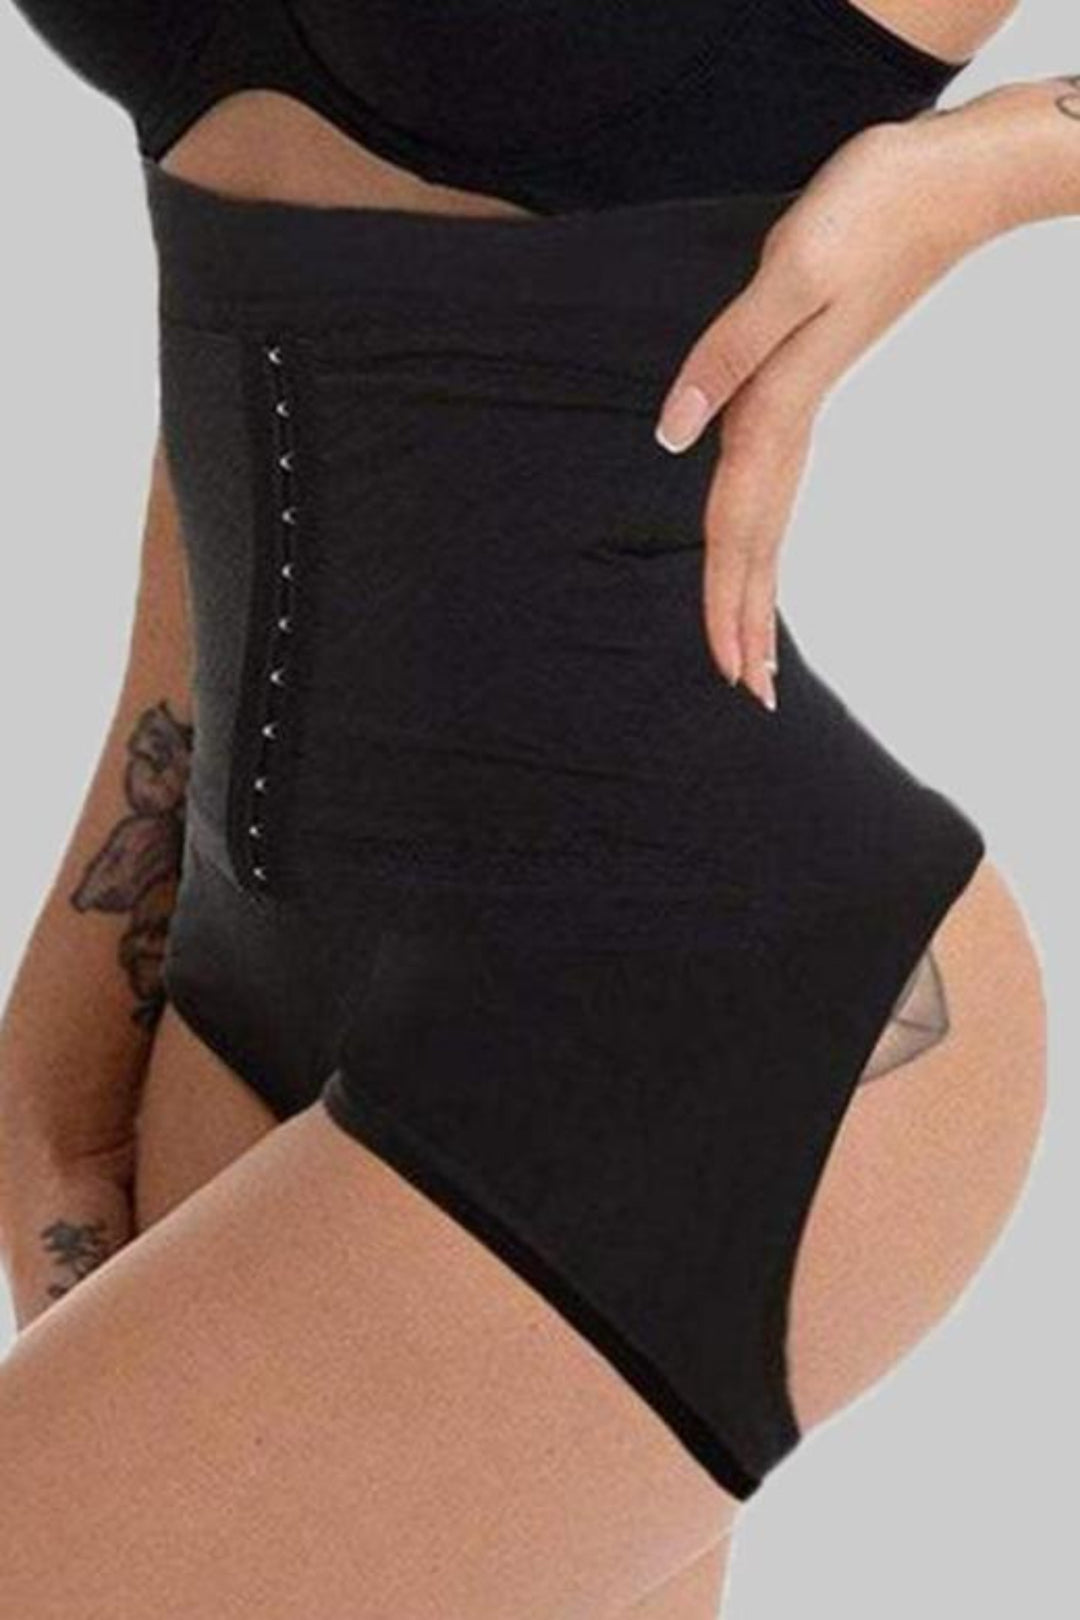 Bodysuits for Women Female Slimming Shapewear Butt Lifter Tummy